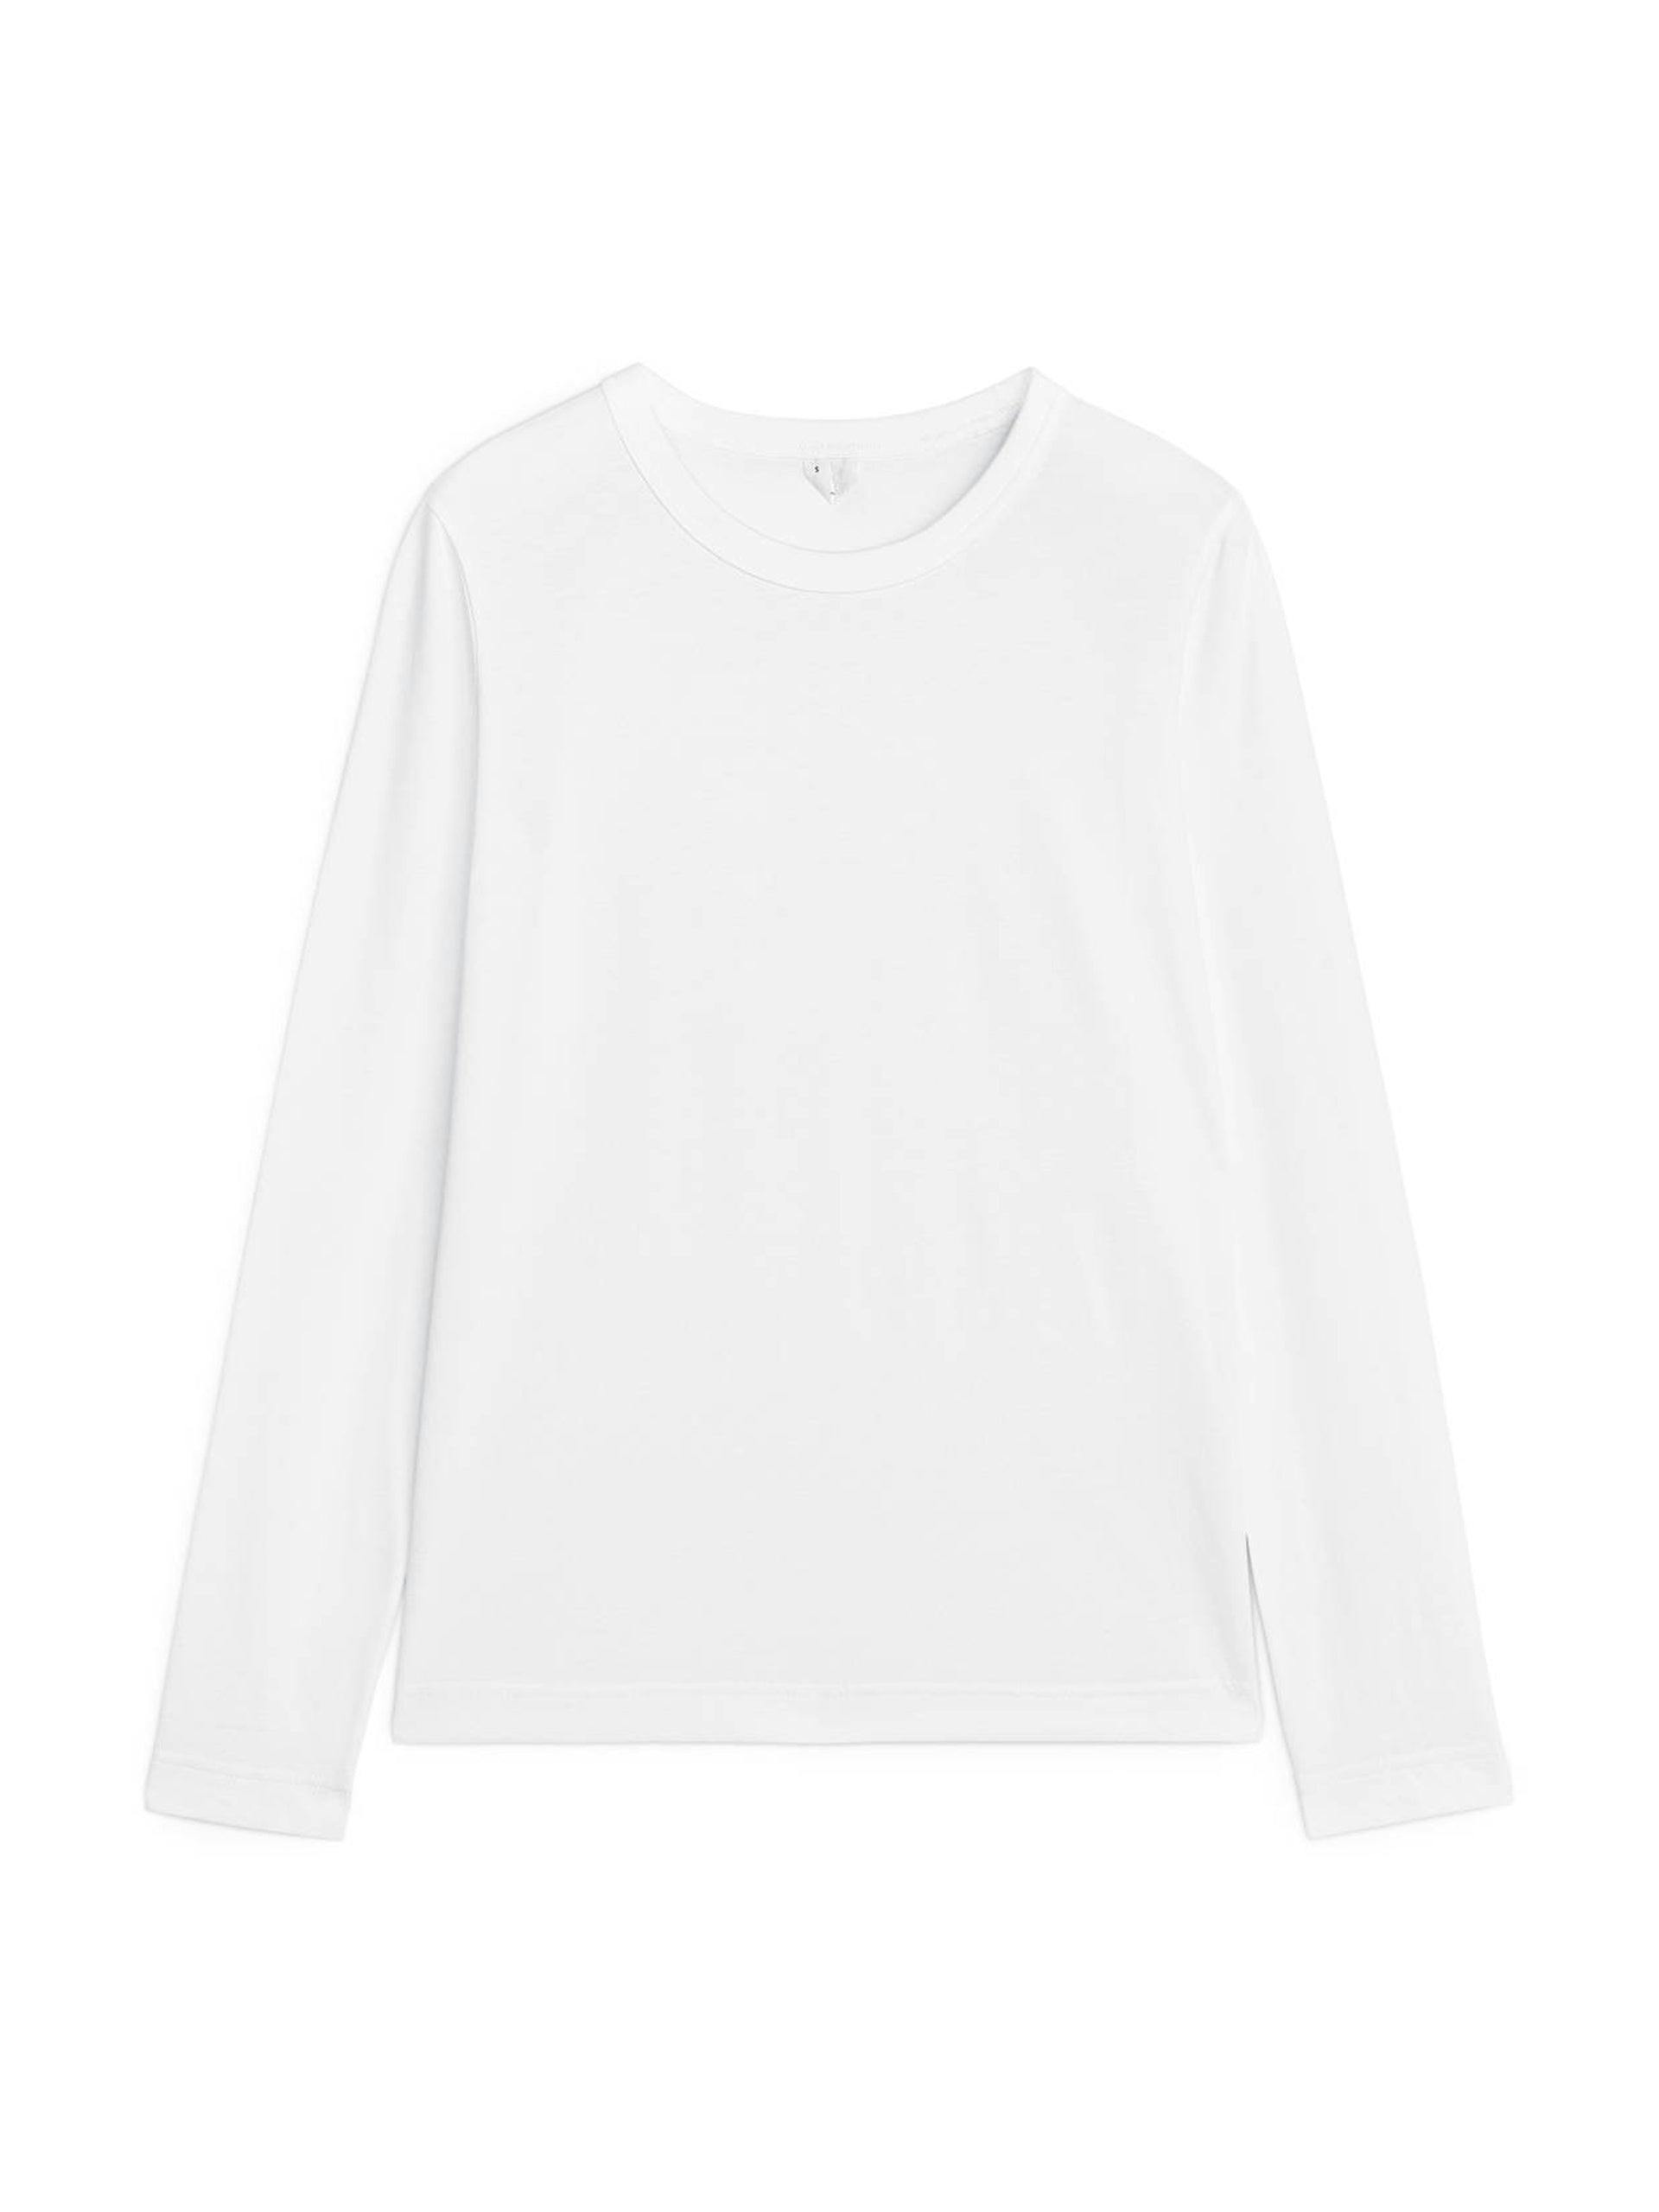 White long-sleeved t-shirt